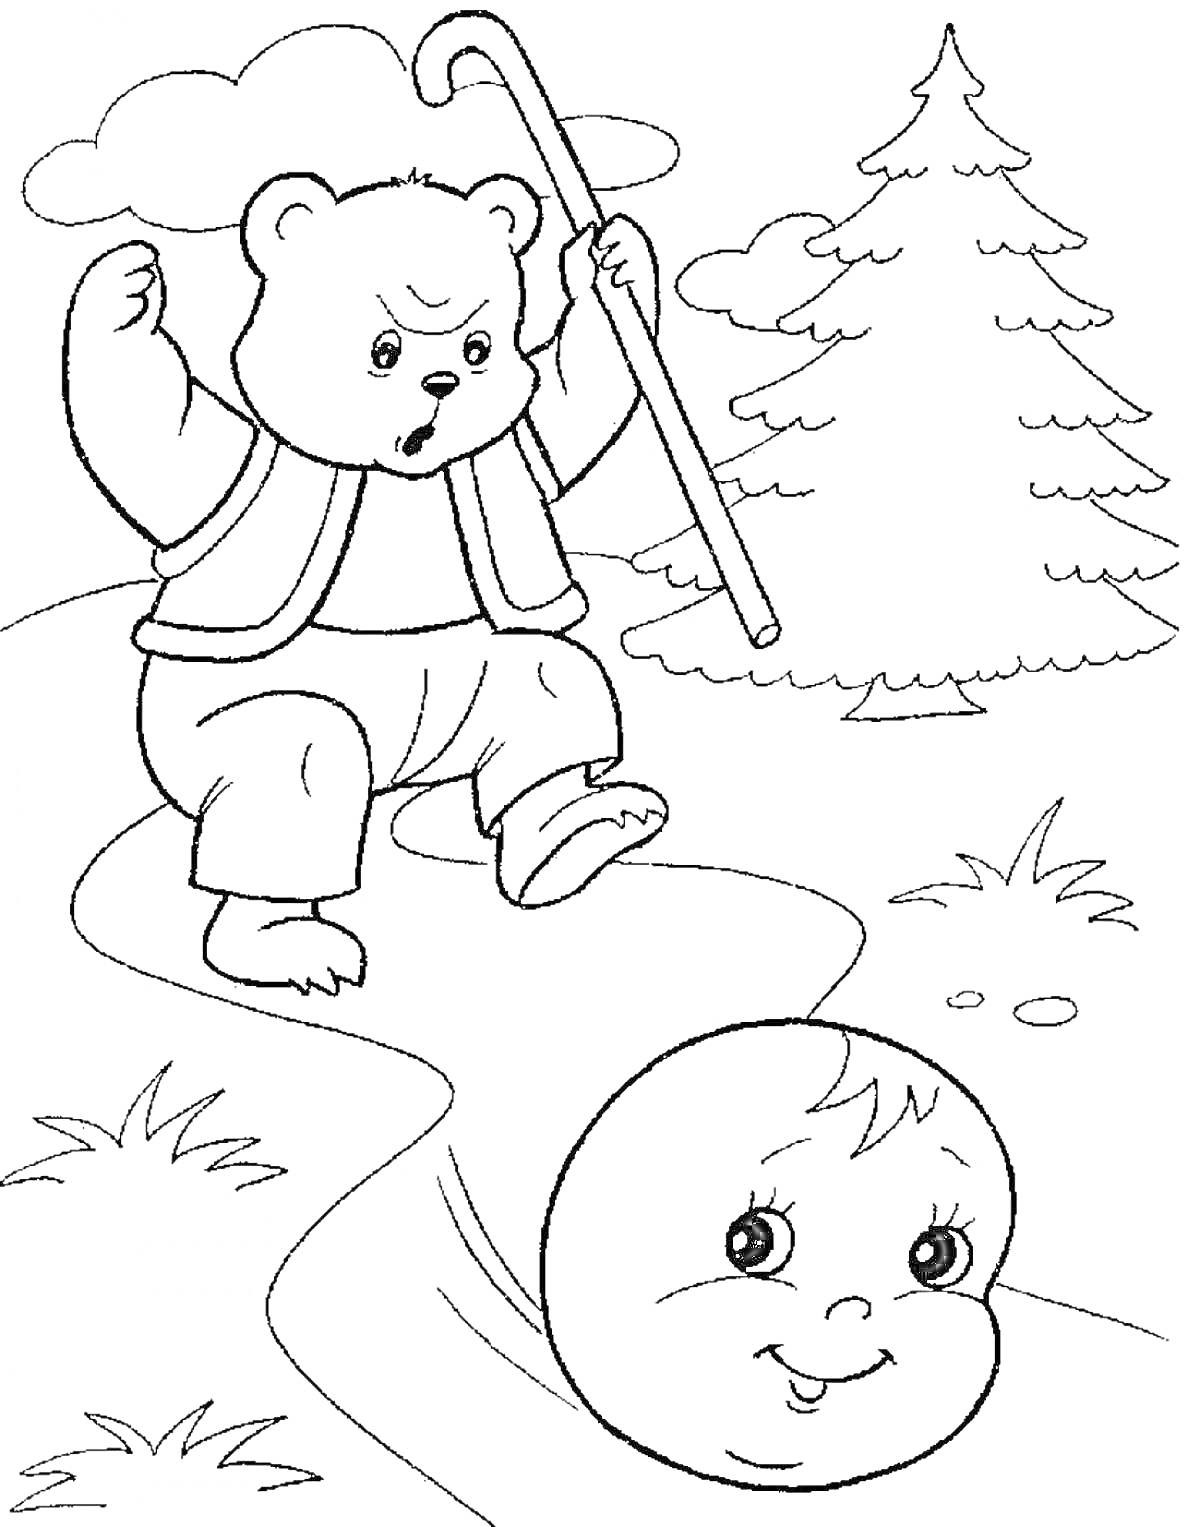 Медвежонок с посохом на дороге и колобок, бегущий по тропинке, на фоне хвойное дерево и кусты